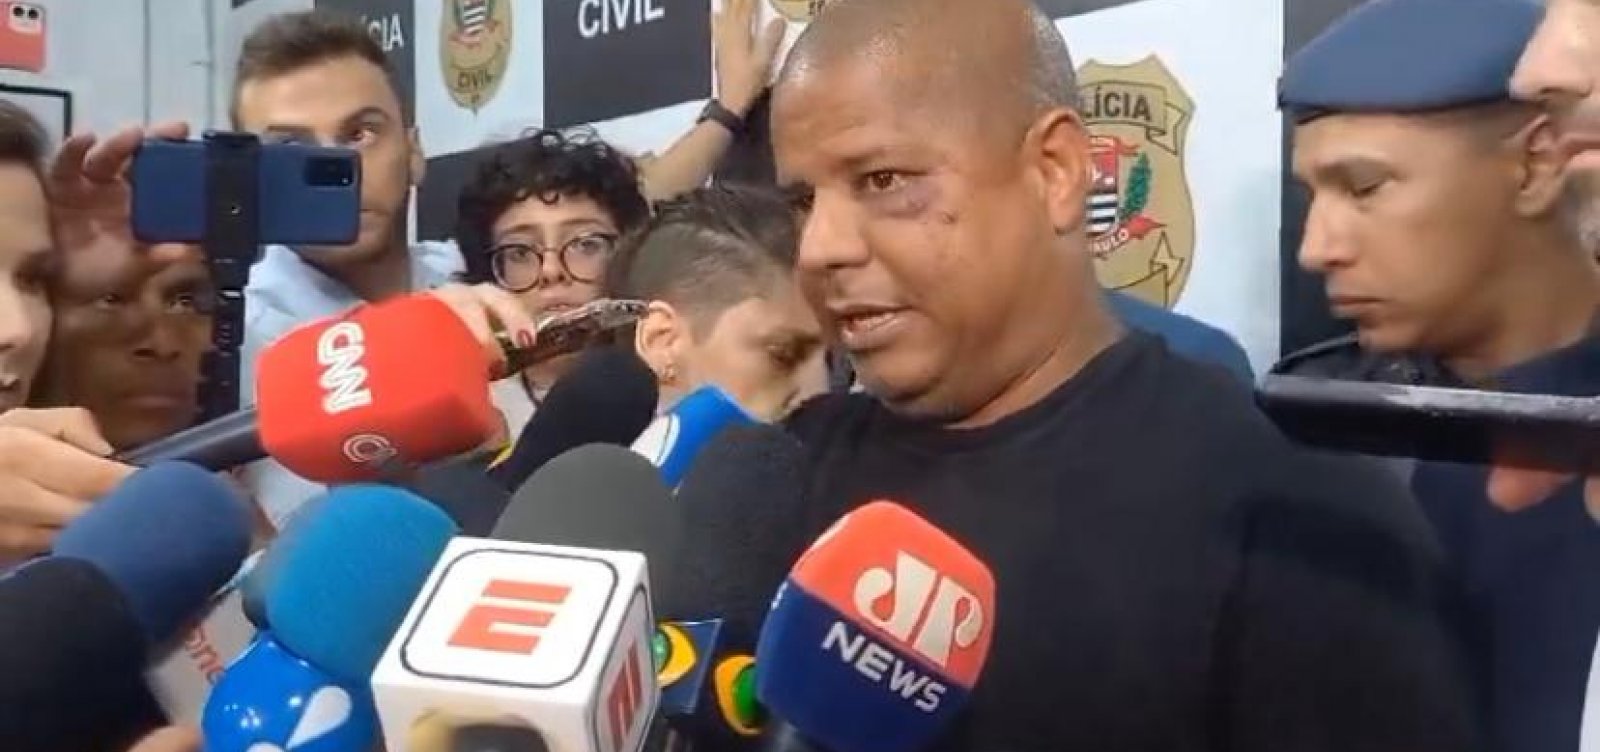 Marcelinho Carioca diz que três homens o sequestram: “Me forçaram a fazer aquele vídeo, é mentira”